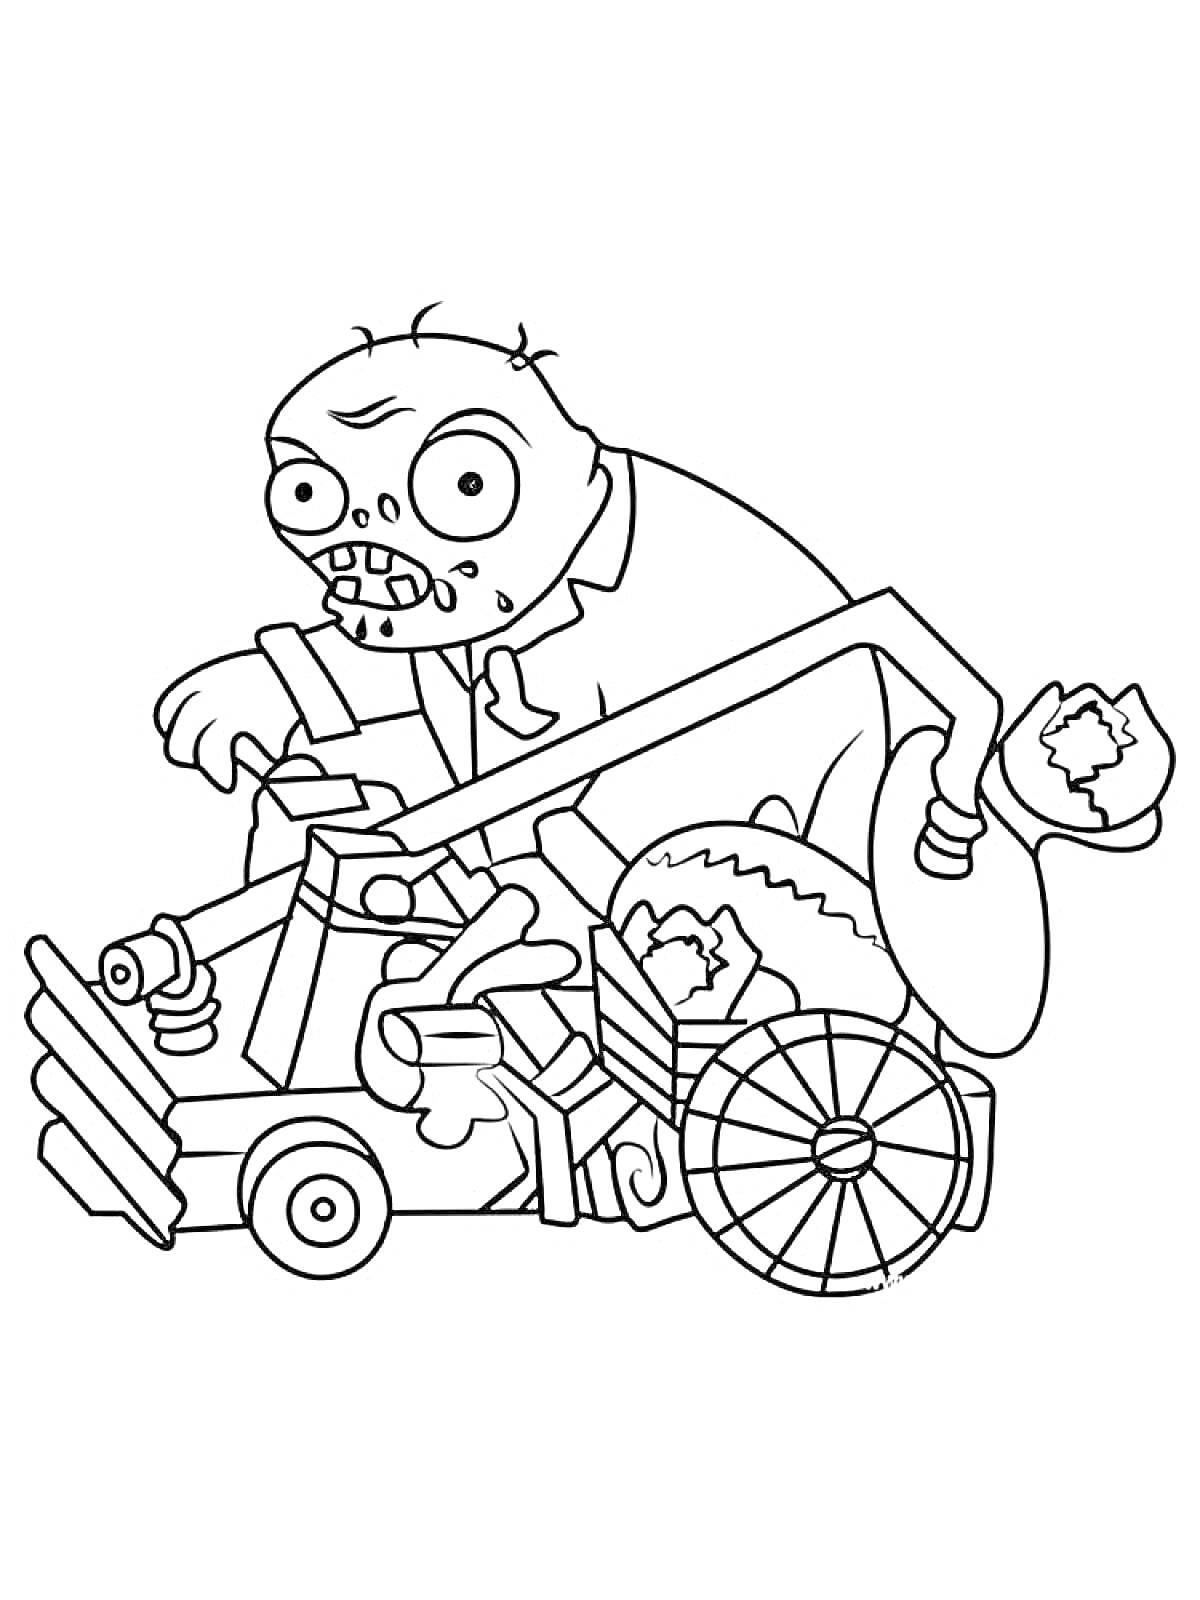 Зомби с инженерной тележкой, закрепленной на колёсах и окруженной инструментами и механизмами